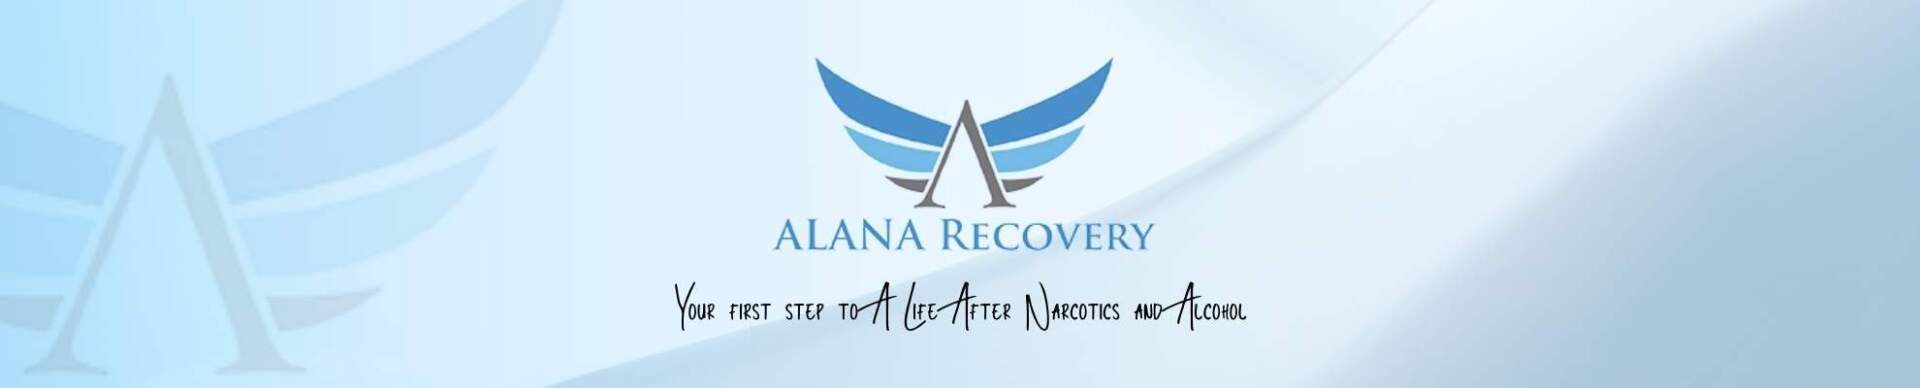 Atlanta-Recovery-Center